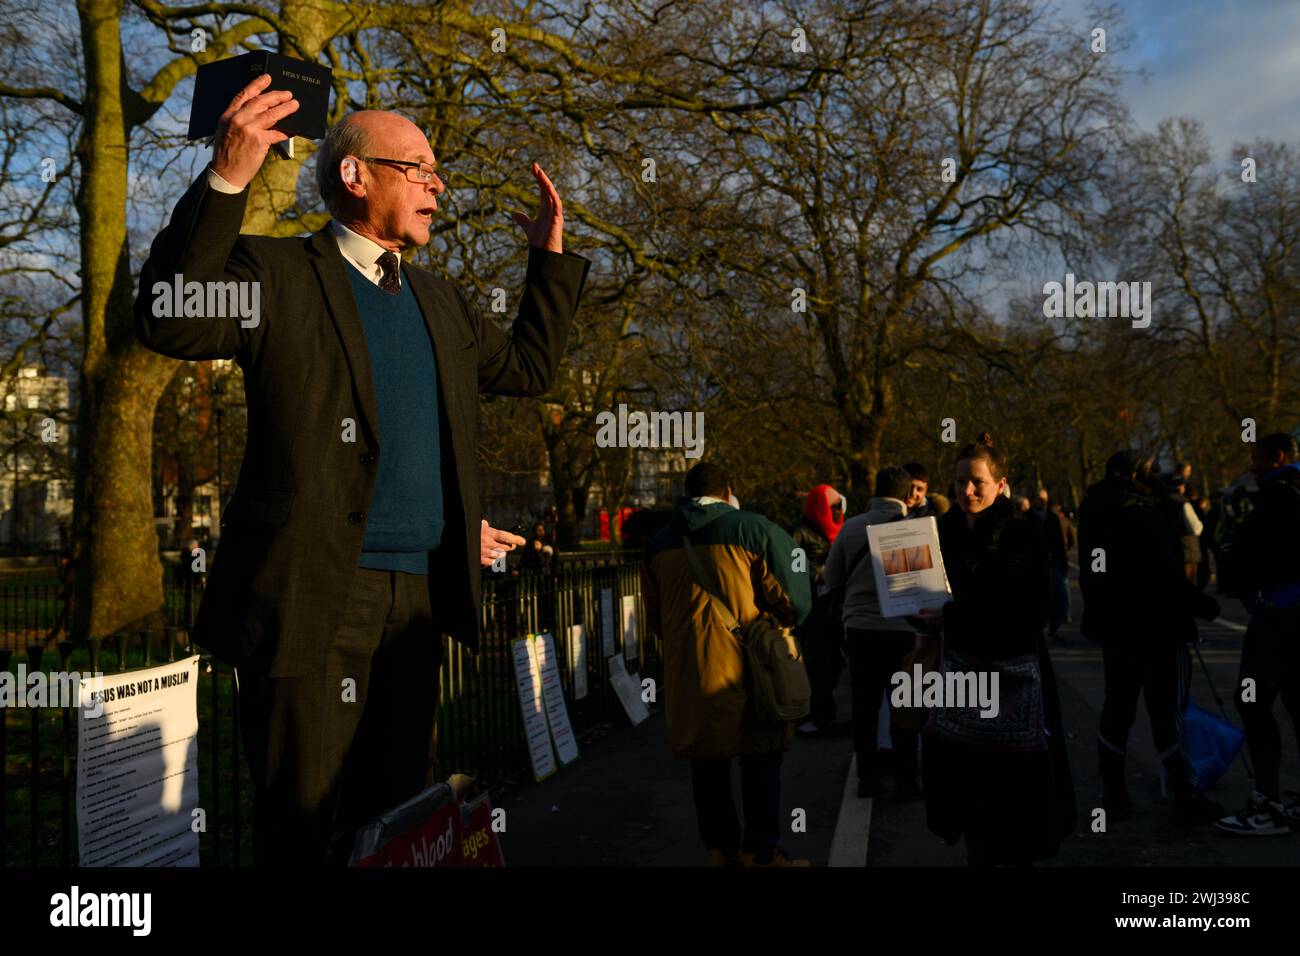 Ein christlicher Prediger, Speakers' Corner, Hyde Park, London. Speakers' Corner ist ein traditioneller Open-Air-Veranstaltungsort, an dem Menschen ihre Ansichten äußern. Peo Stockfoto